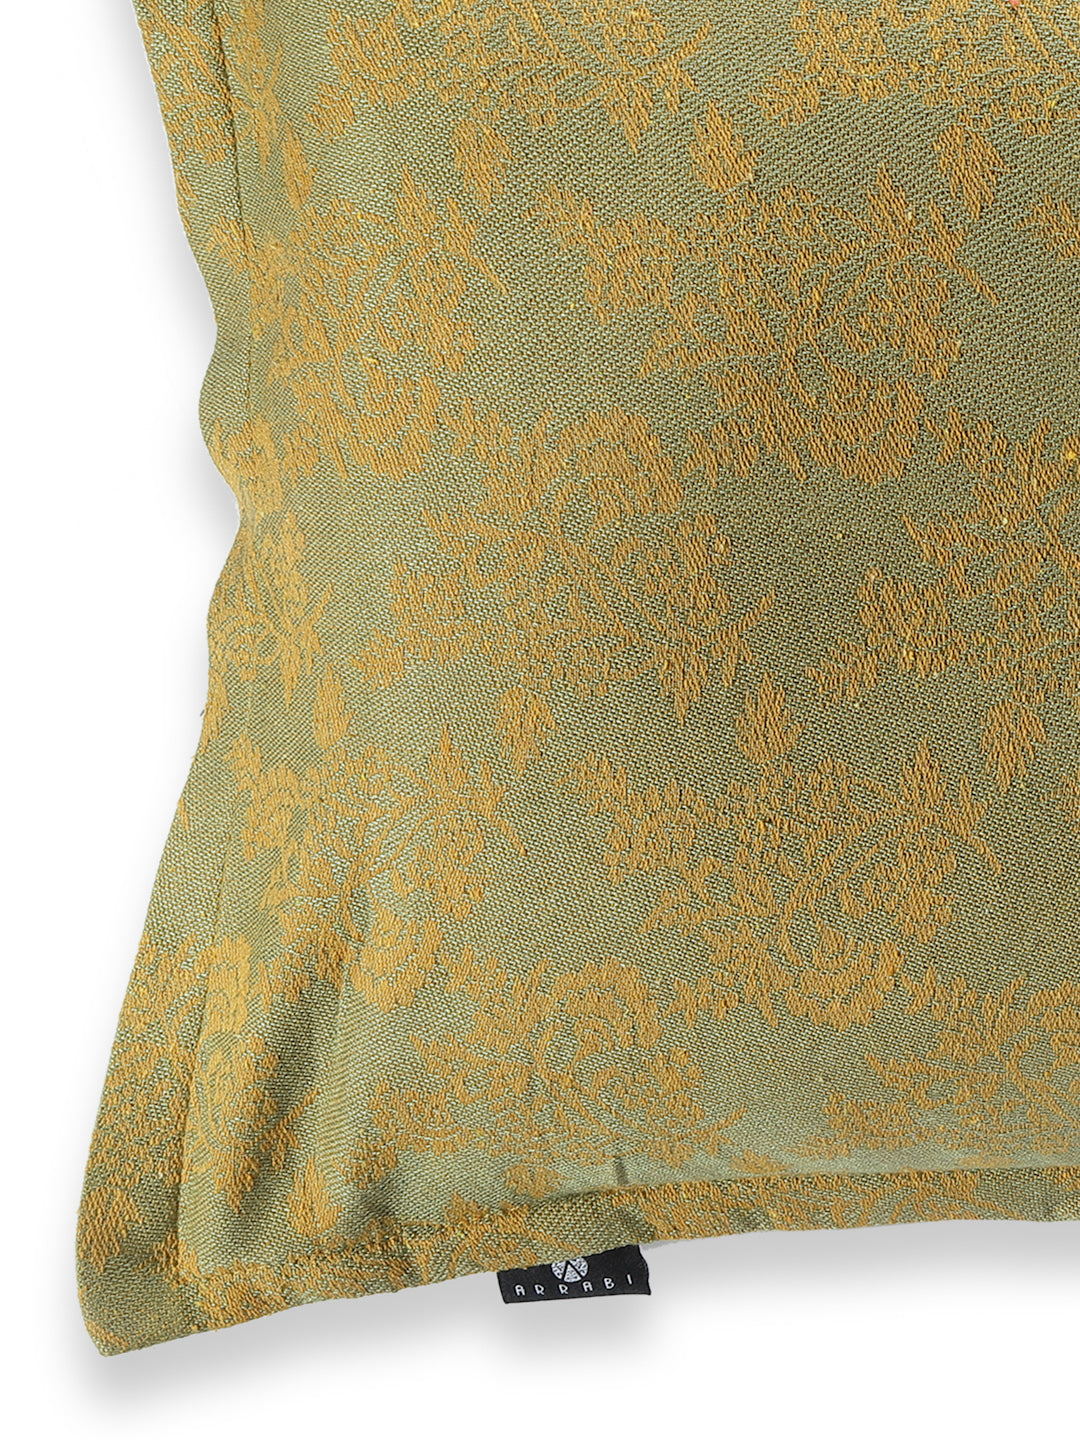 Arrabi Beige Leaf Handwoven Cotton Set of 2 Pillow Covers (70 x 45 cm)